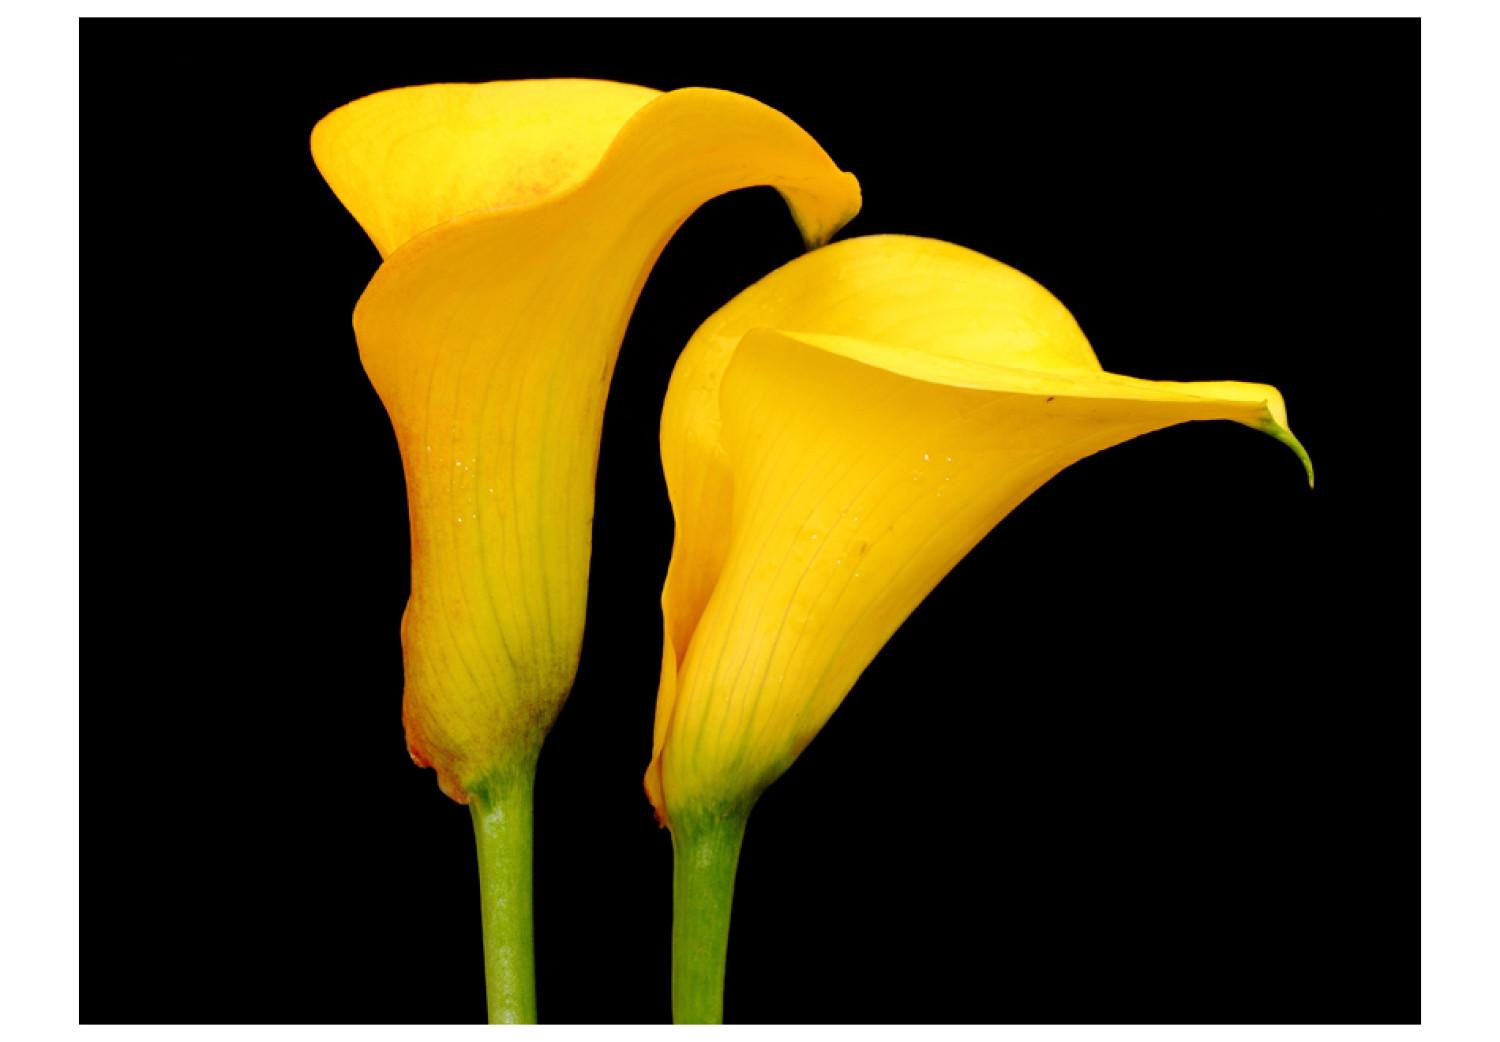 Fotomural Dos lirios amarillos, fondo negro - motivo floral con flores en medio